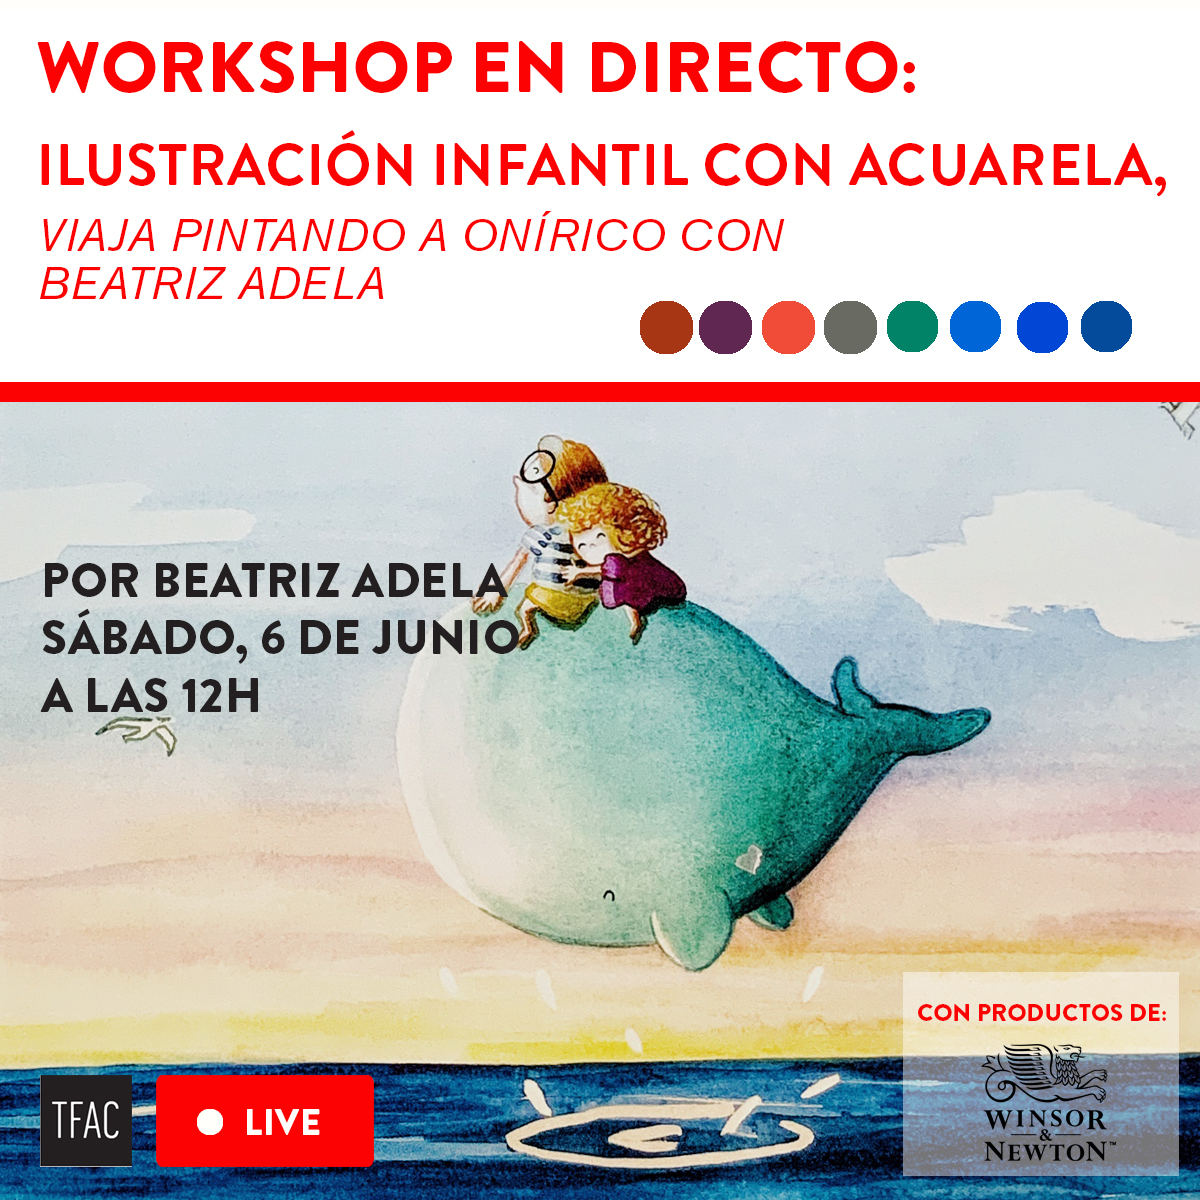 Viaja pintando con Beatriz Adela a Onírico: workshop de ilustración infantil en acuarela